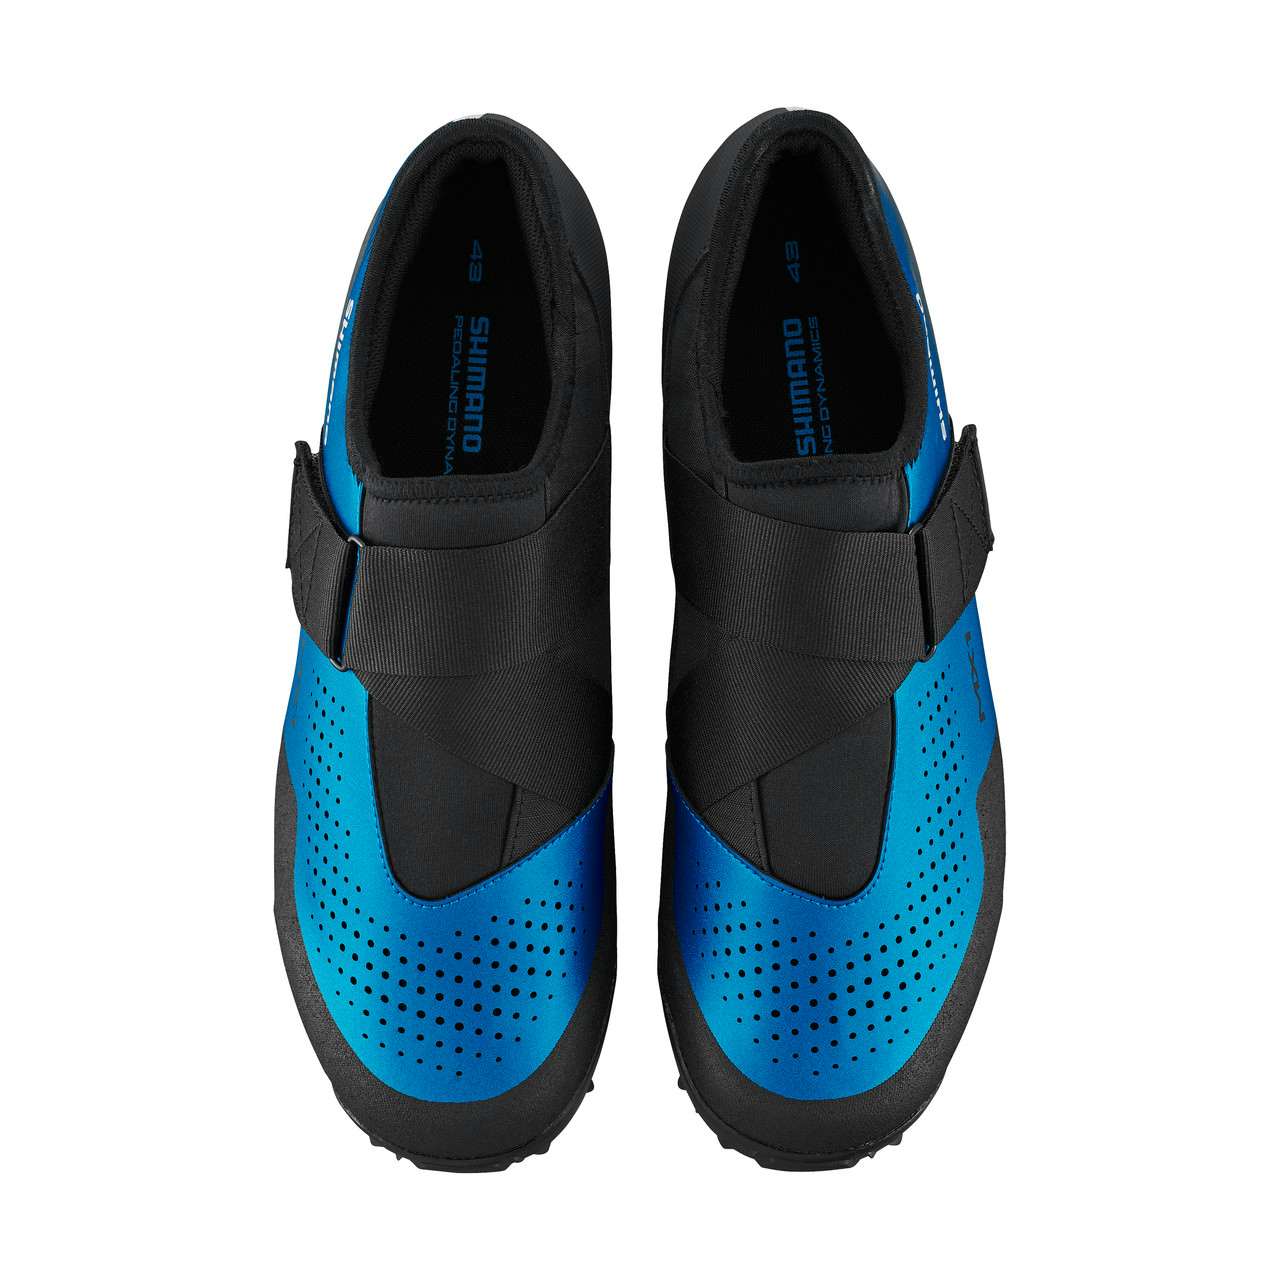 SH-MX100 Cycling Shoes Blue